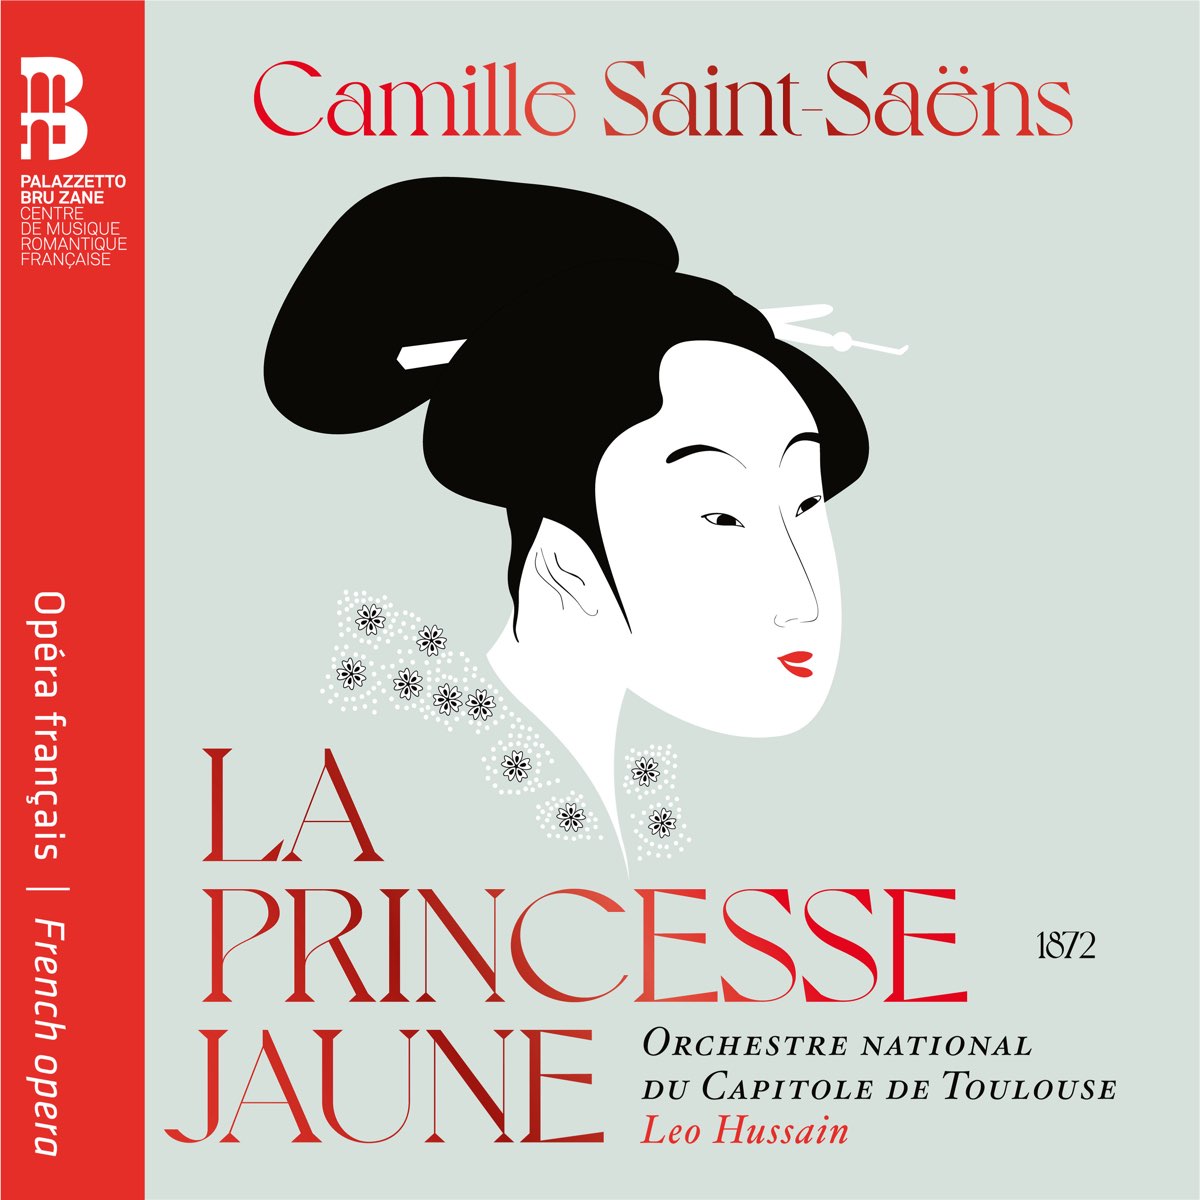 Orchestre National du Capitole de Toulouse & Leo Hussain – Camille Saint-Saens: La princesse jaune (2021) [FLAC 24bit/96kHz]